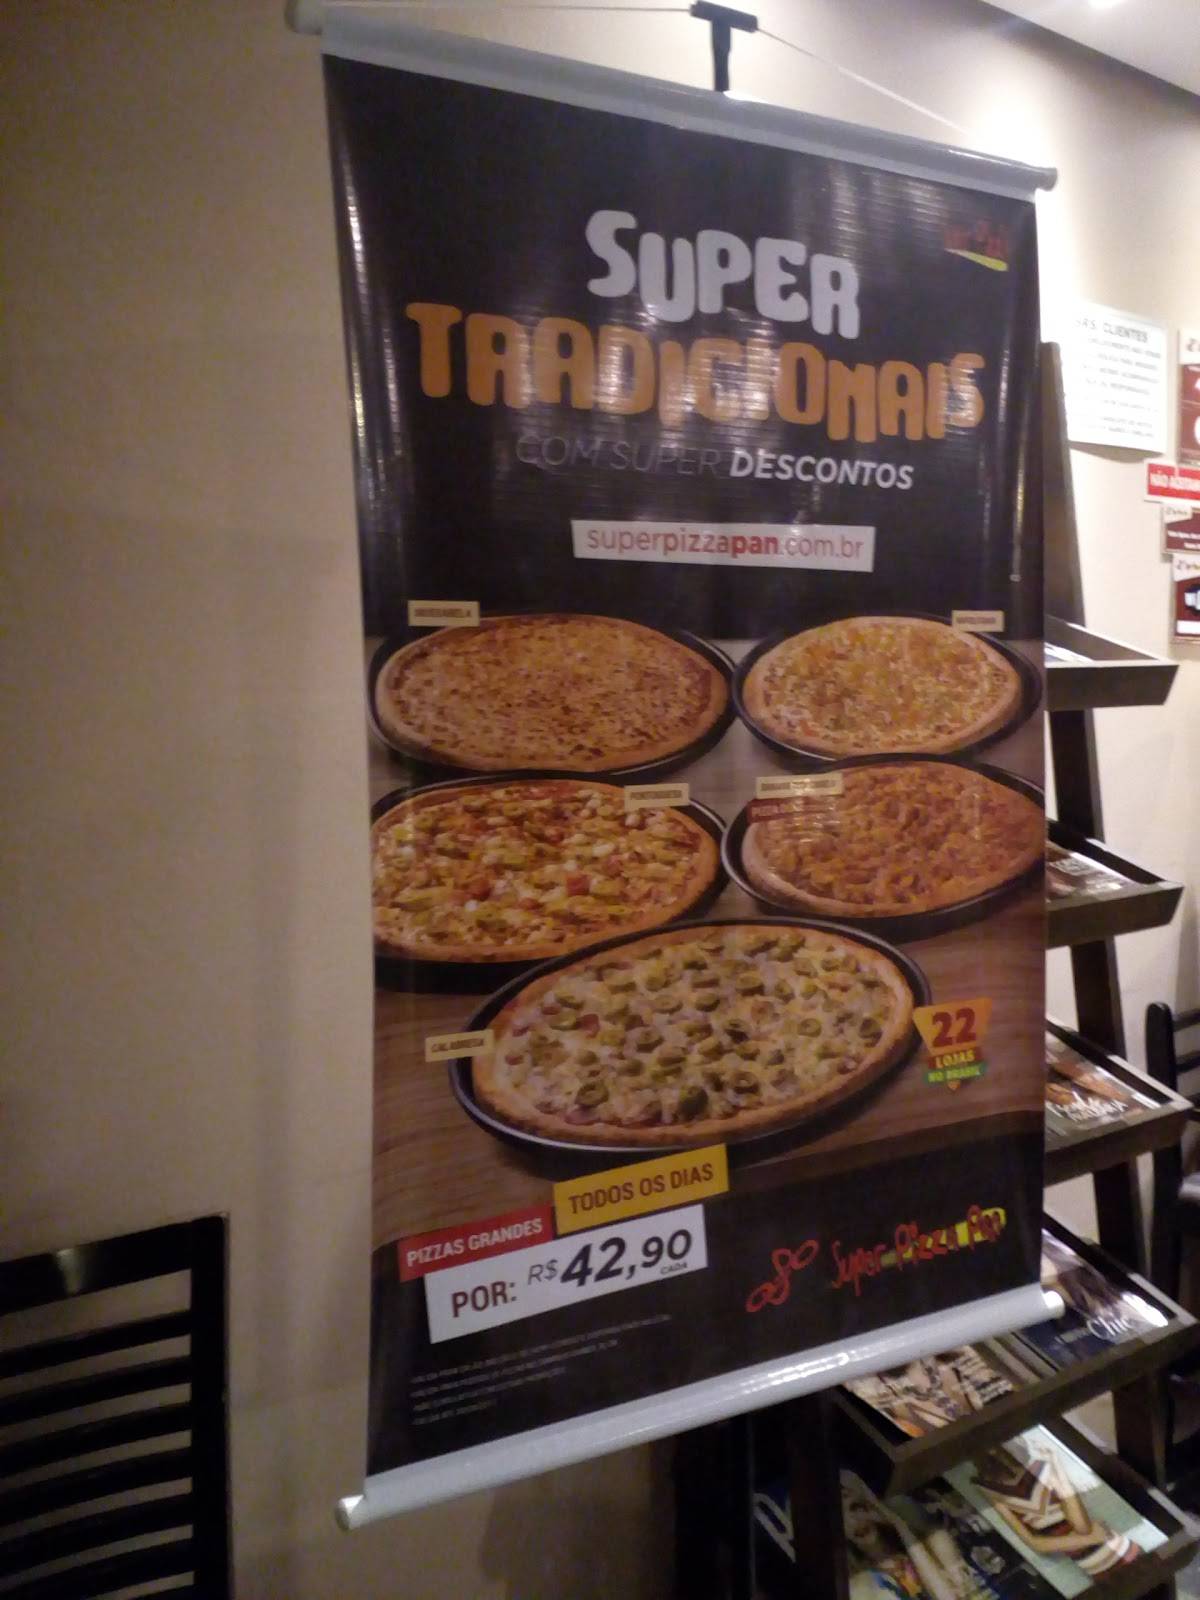 Comercial Super Pizza Pan Sorocaba 